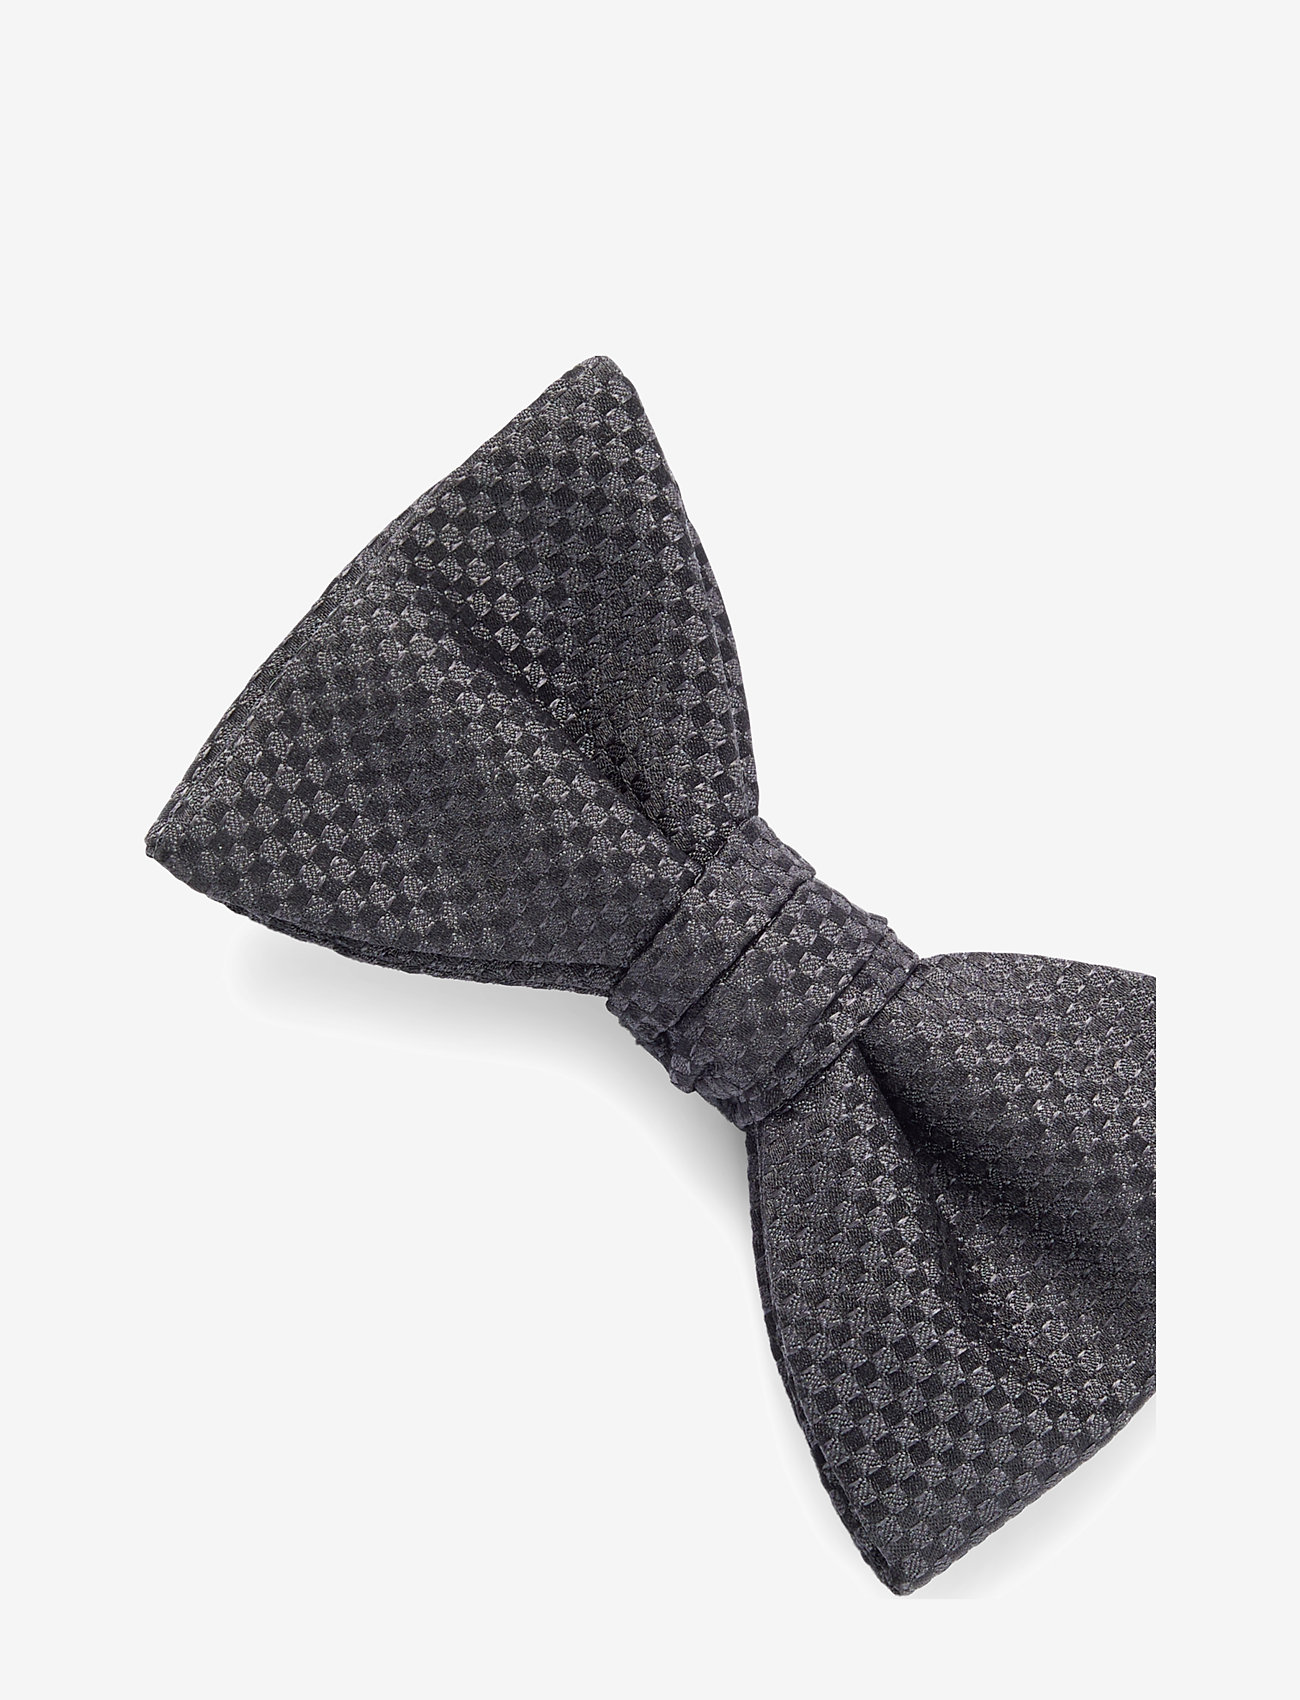 HUGO - Bow tie dressy - laveste priser - black - 1